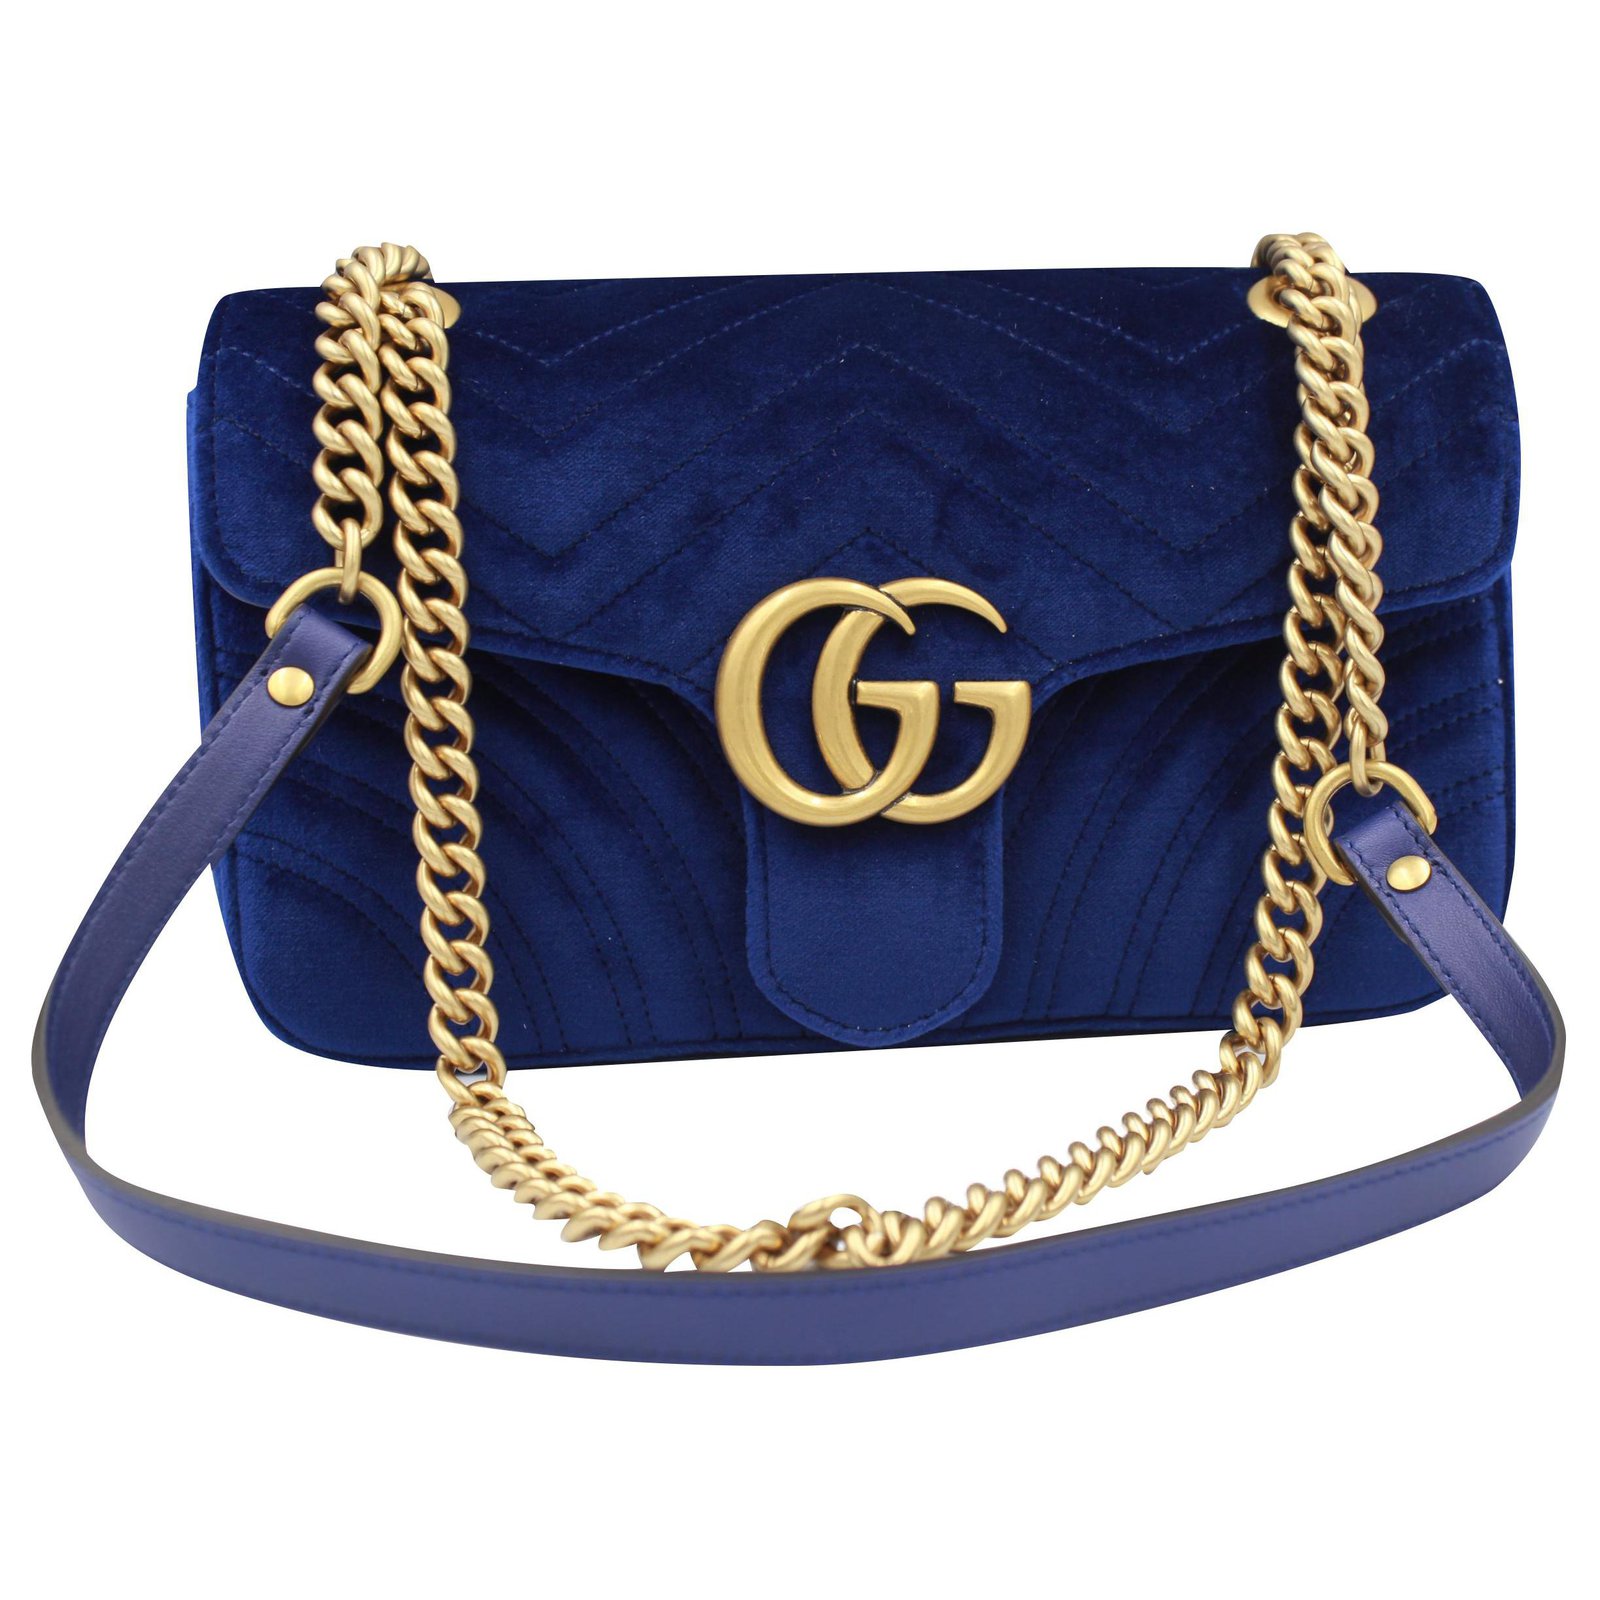 gucci bag navy blue